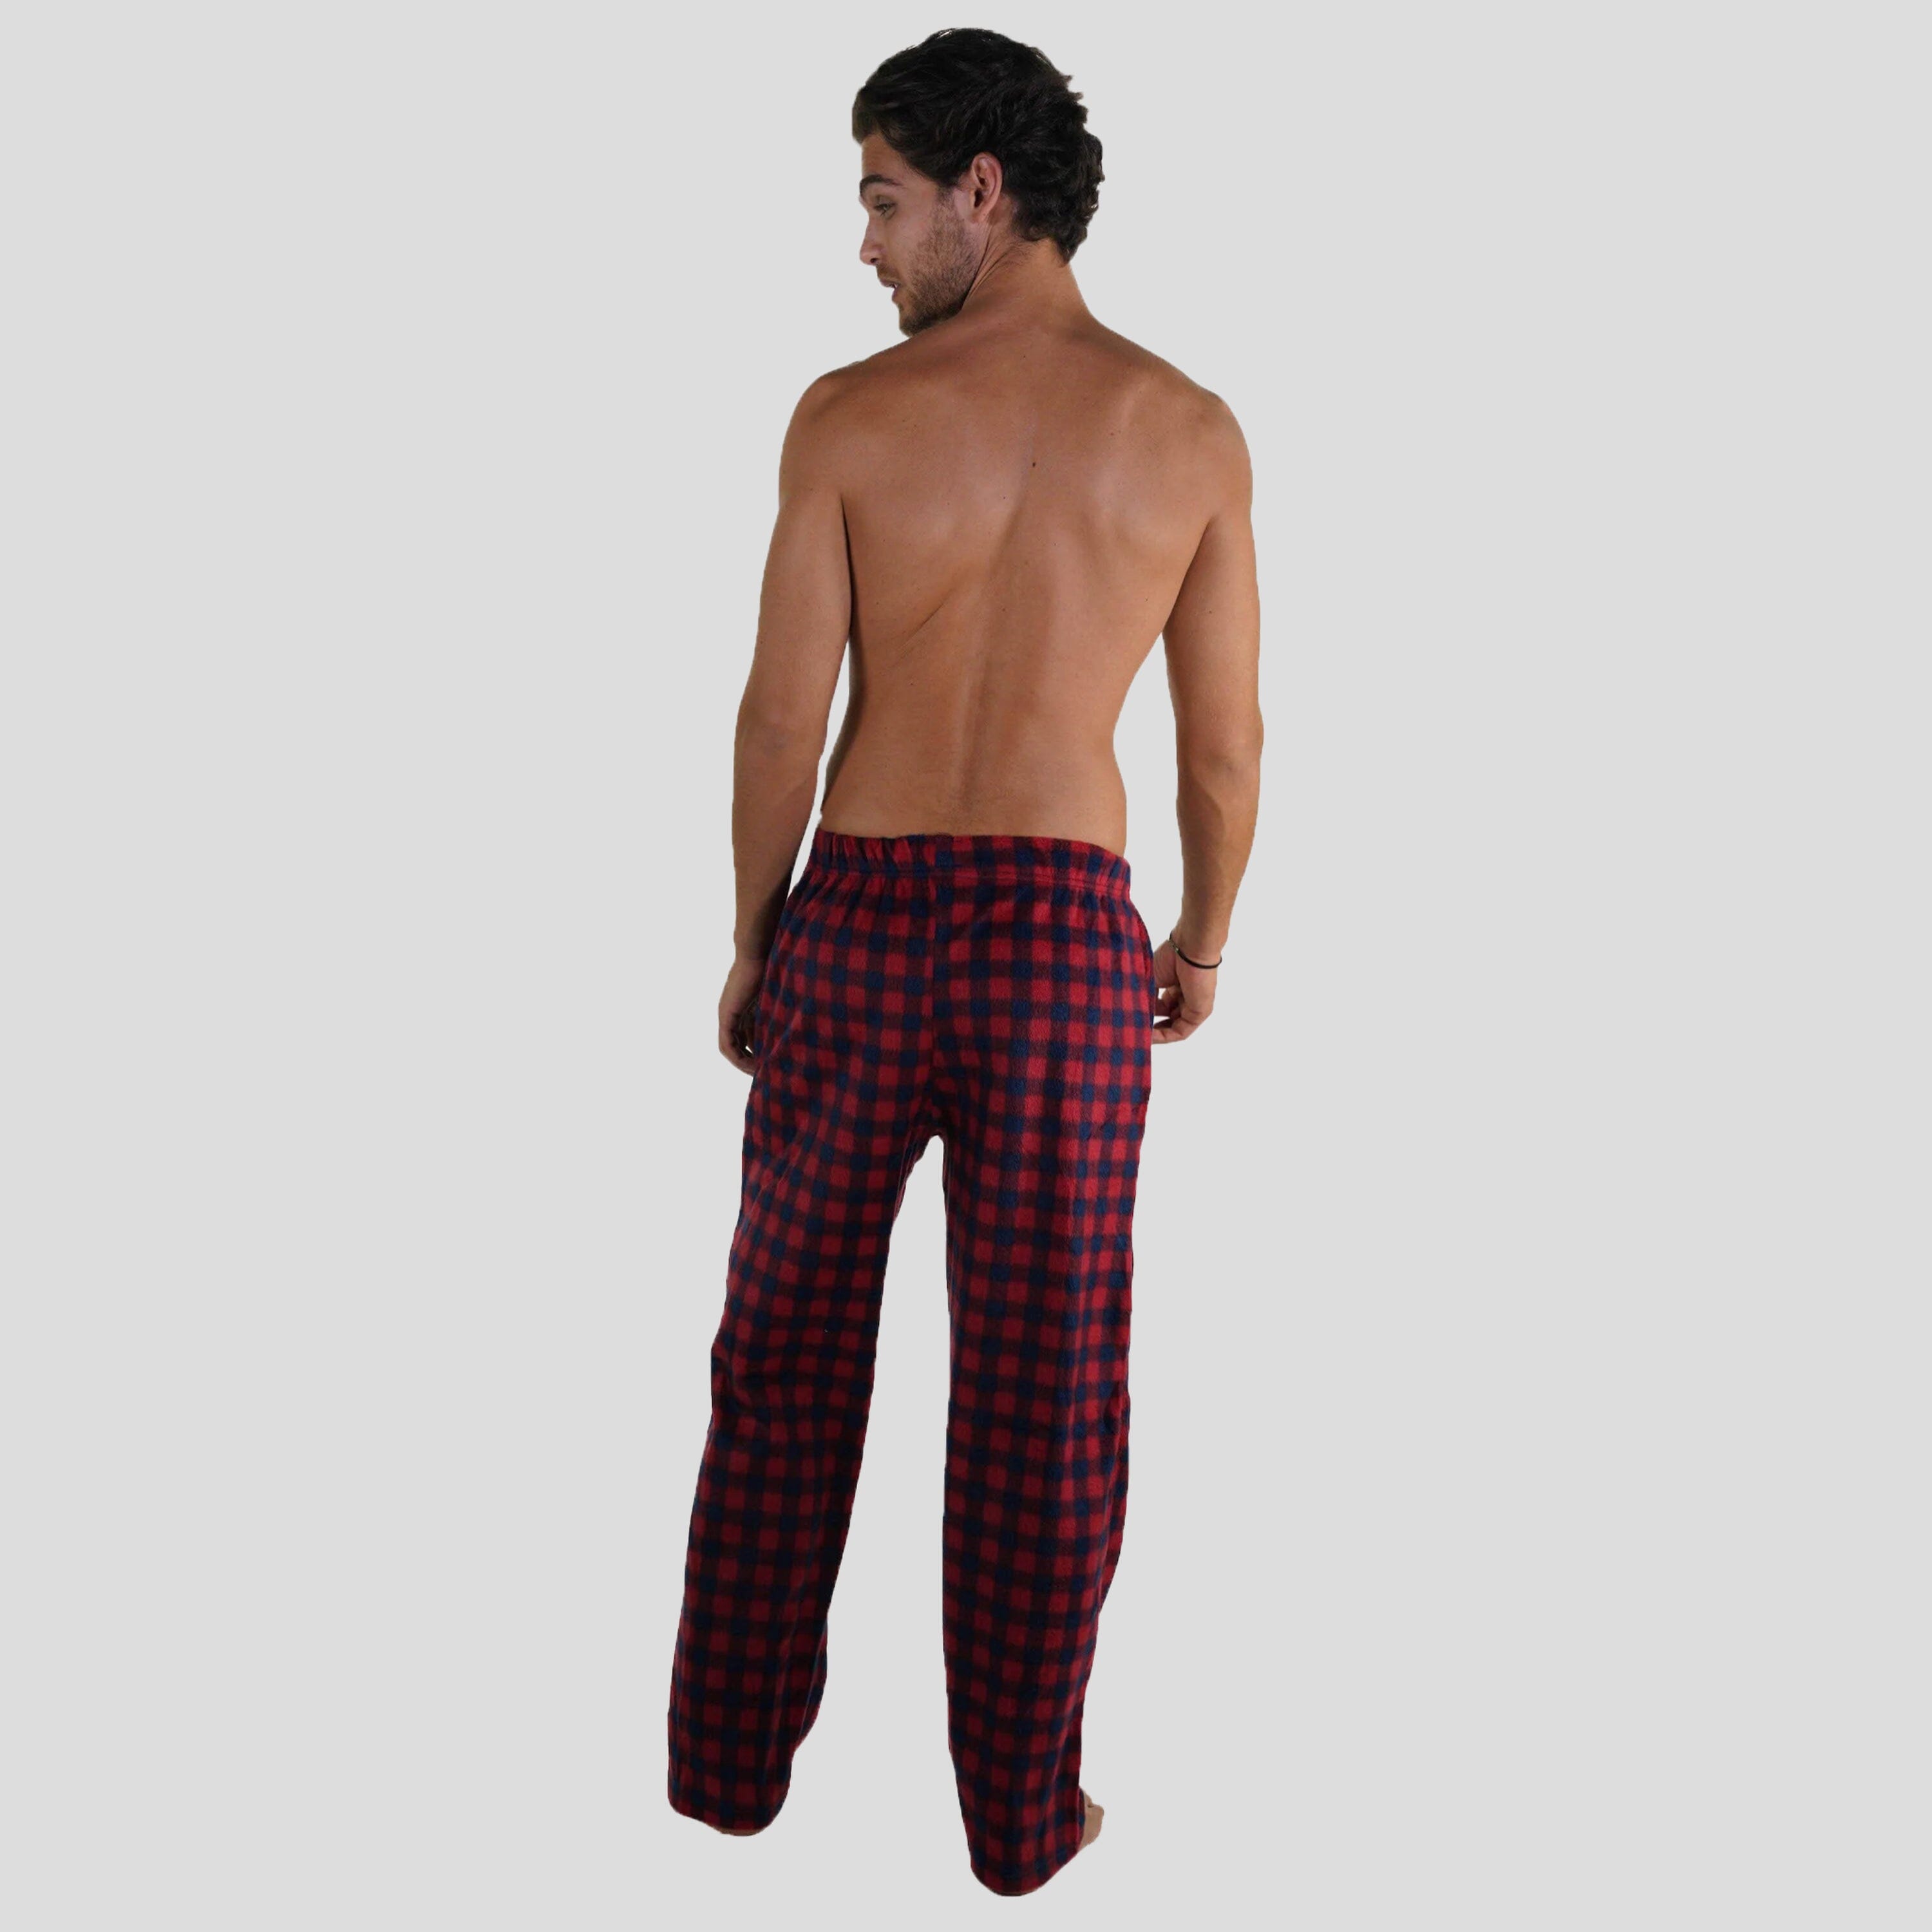 Men's Minky Fleece Sleep Pants - Red Plaid Men's Sleep Pant Members Only 